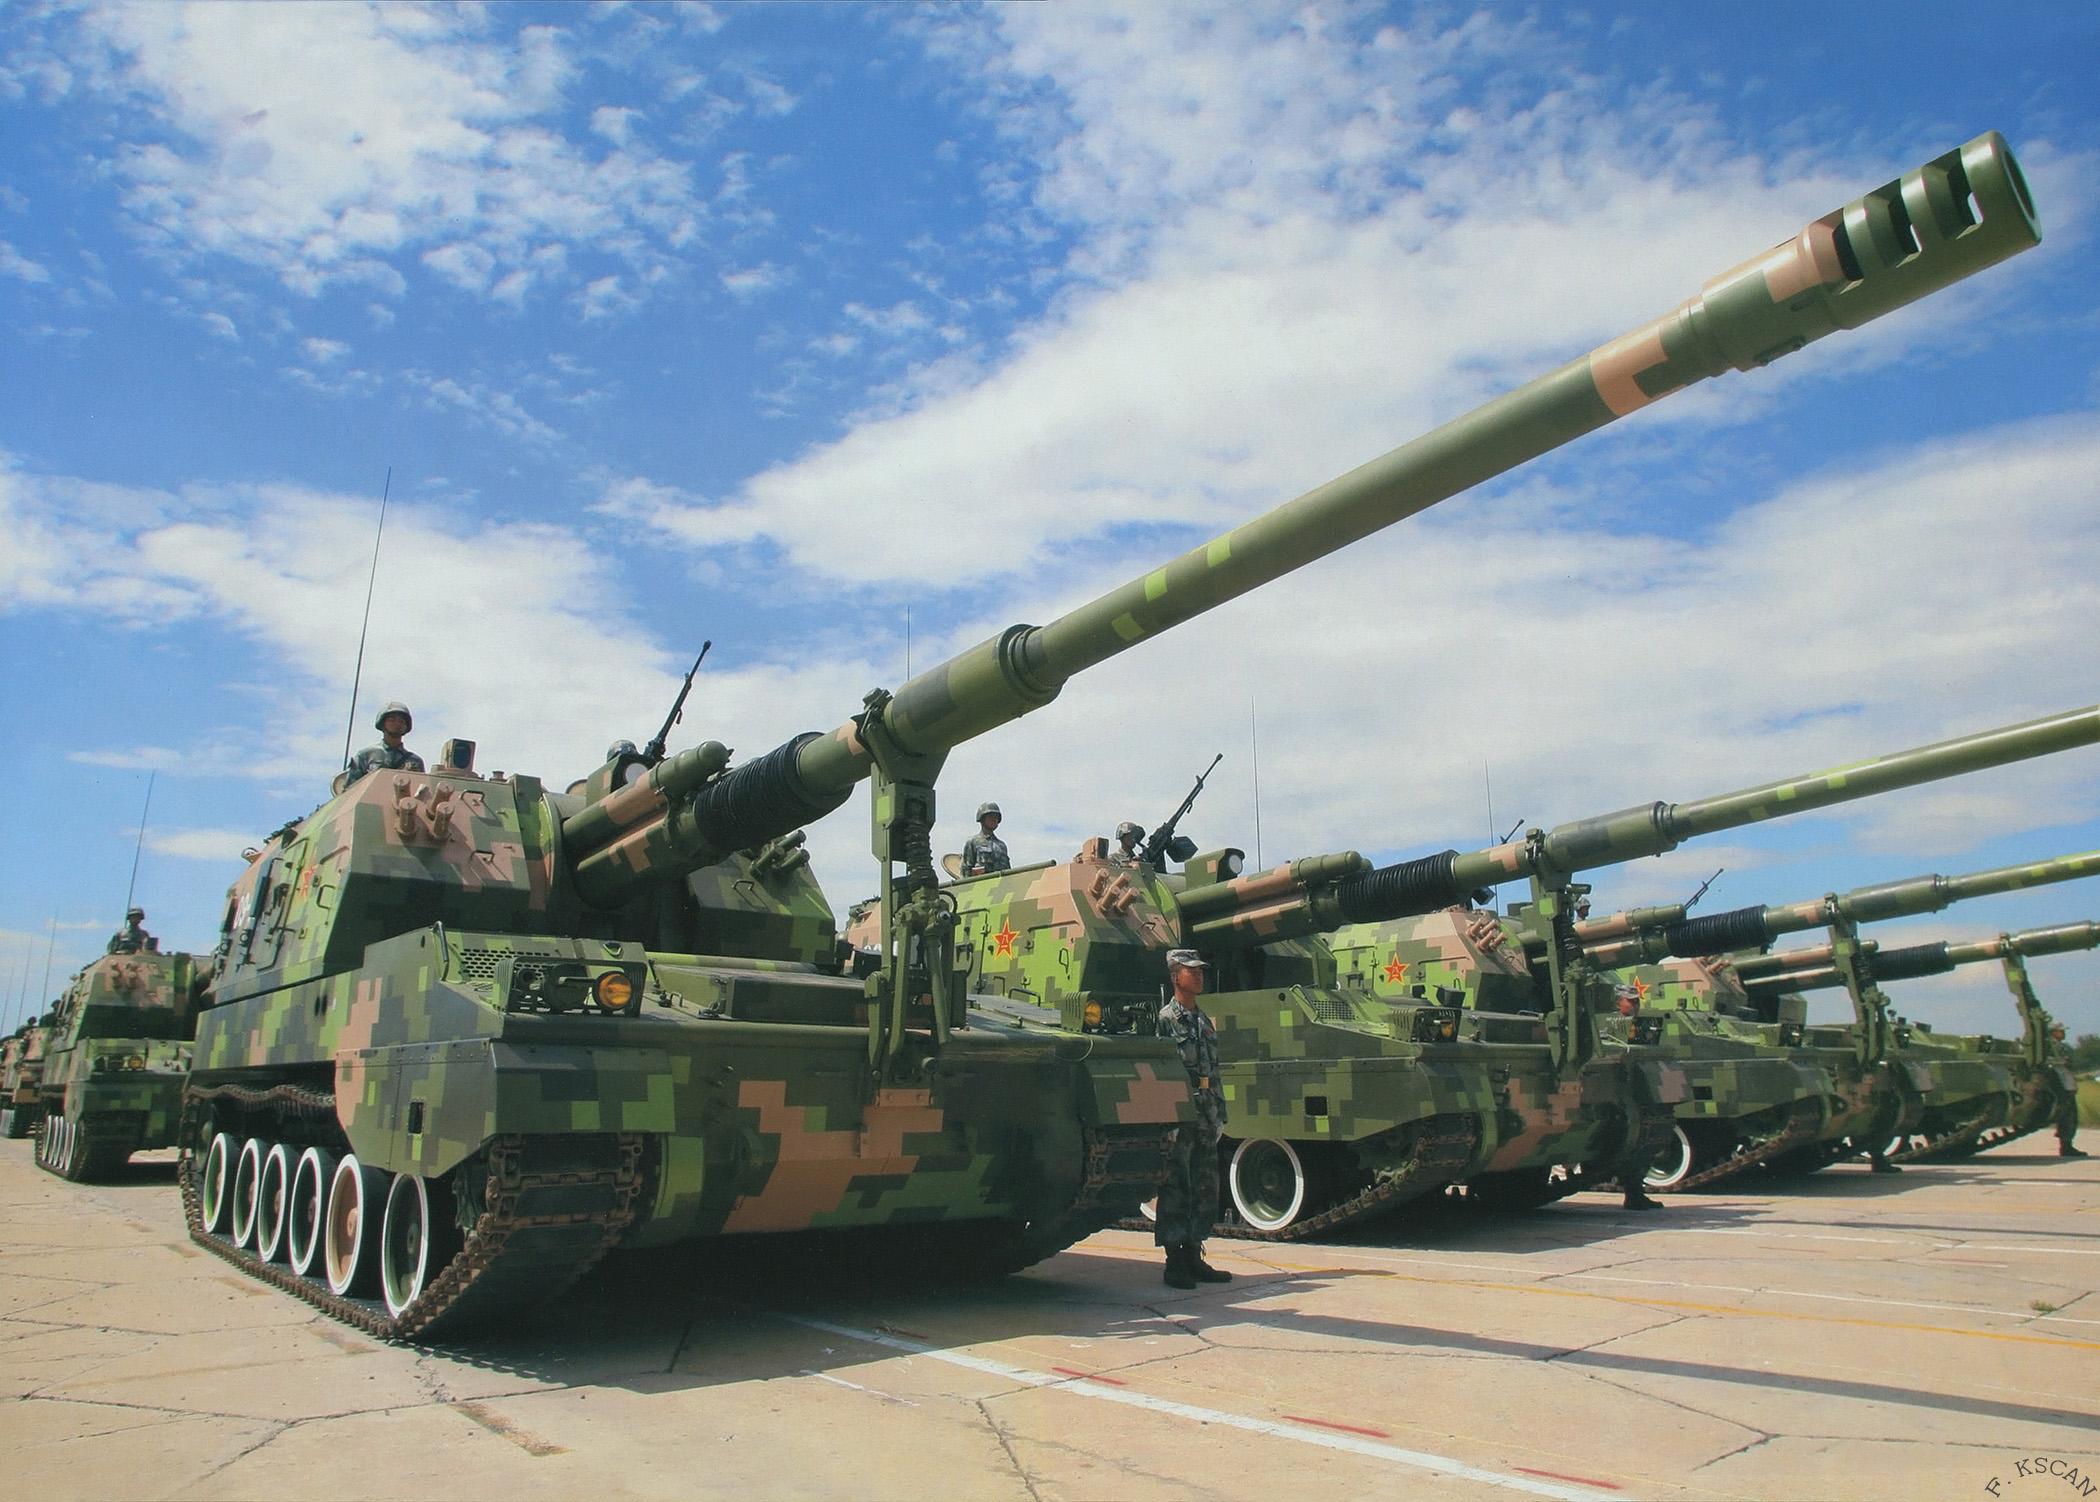 中国陆军新装备首公开,部署地点引多方解读